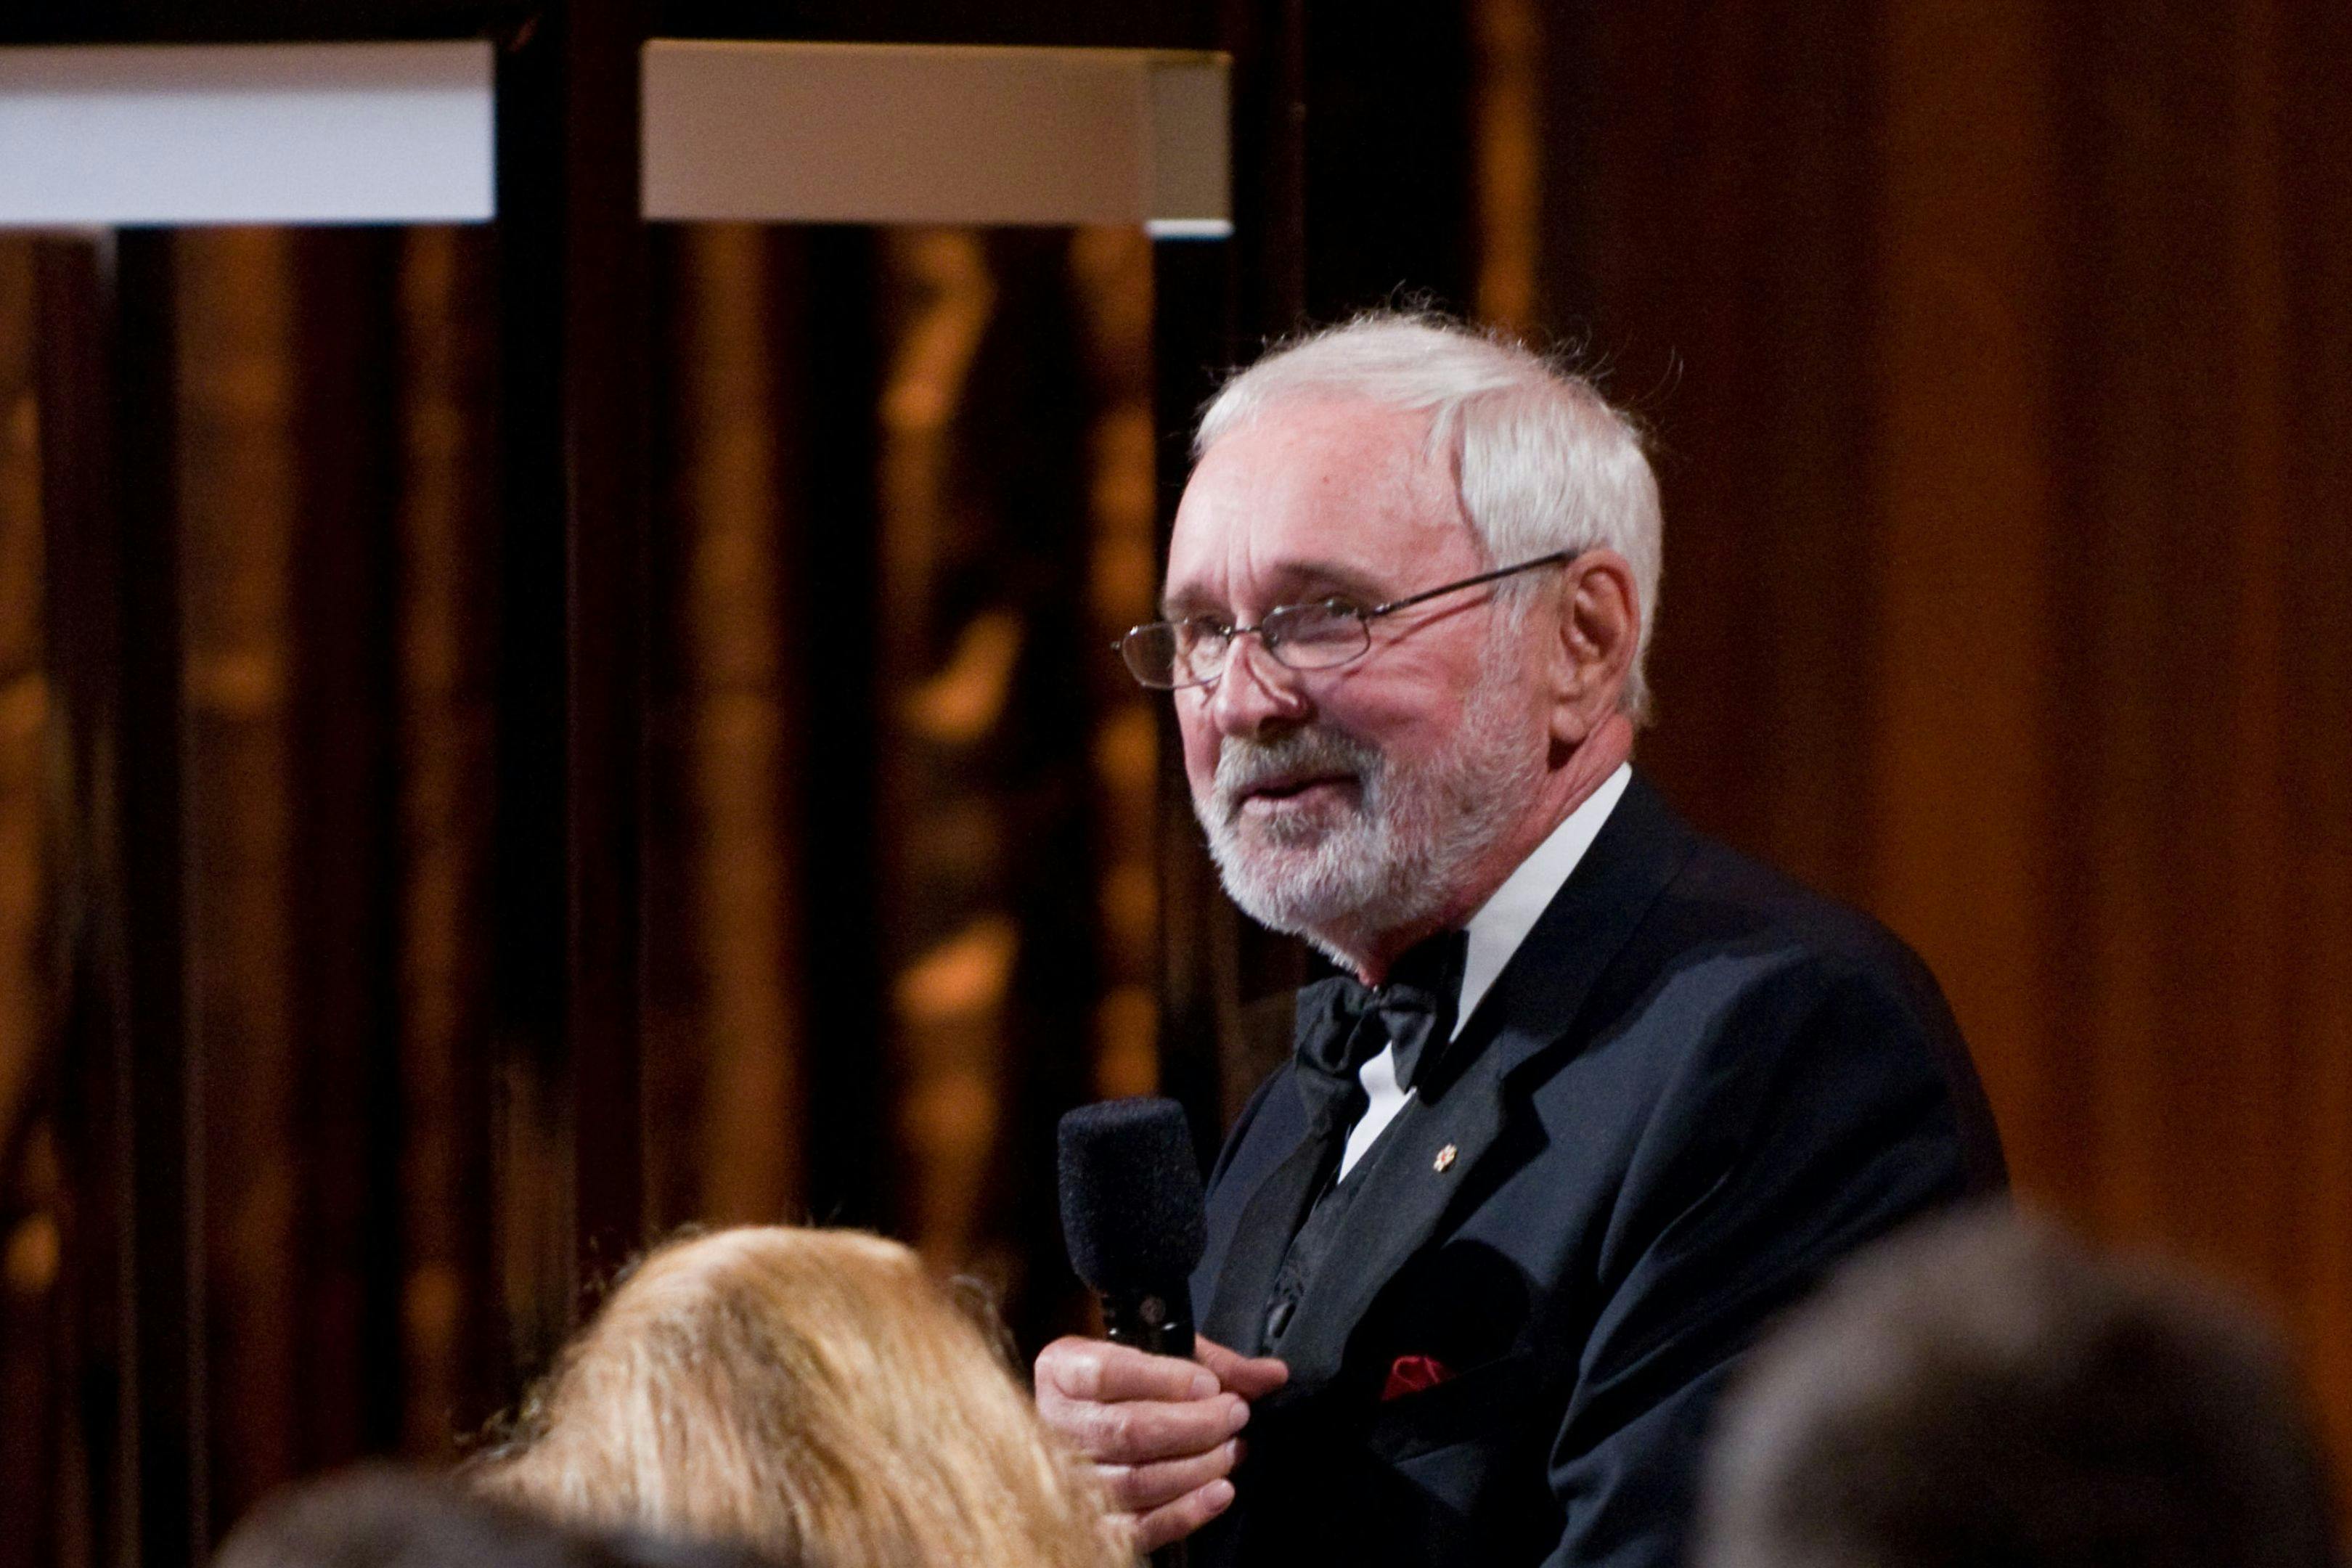 Fotografía del director Norman Jewison durante la gala de los Governors Awards de 2009